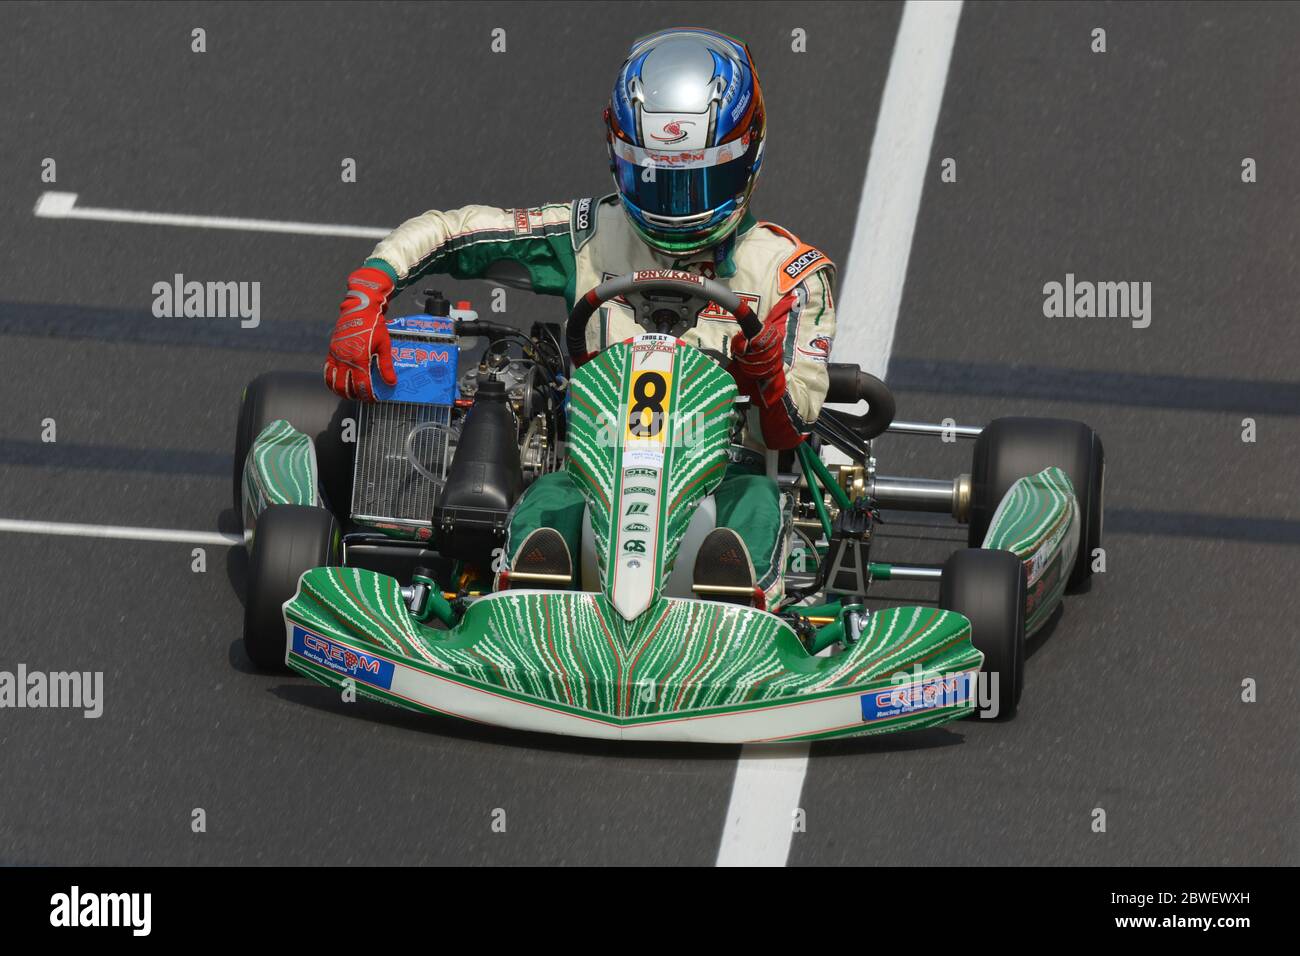 Der chinesische Rennfahrer Guanyu Zhou während seiner Kart-Karriere. Stockfoto